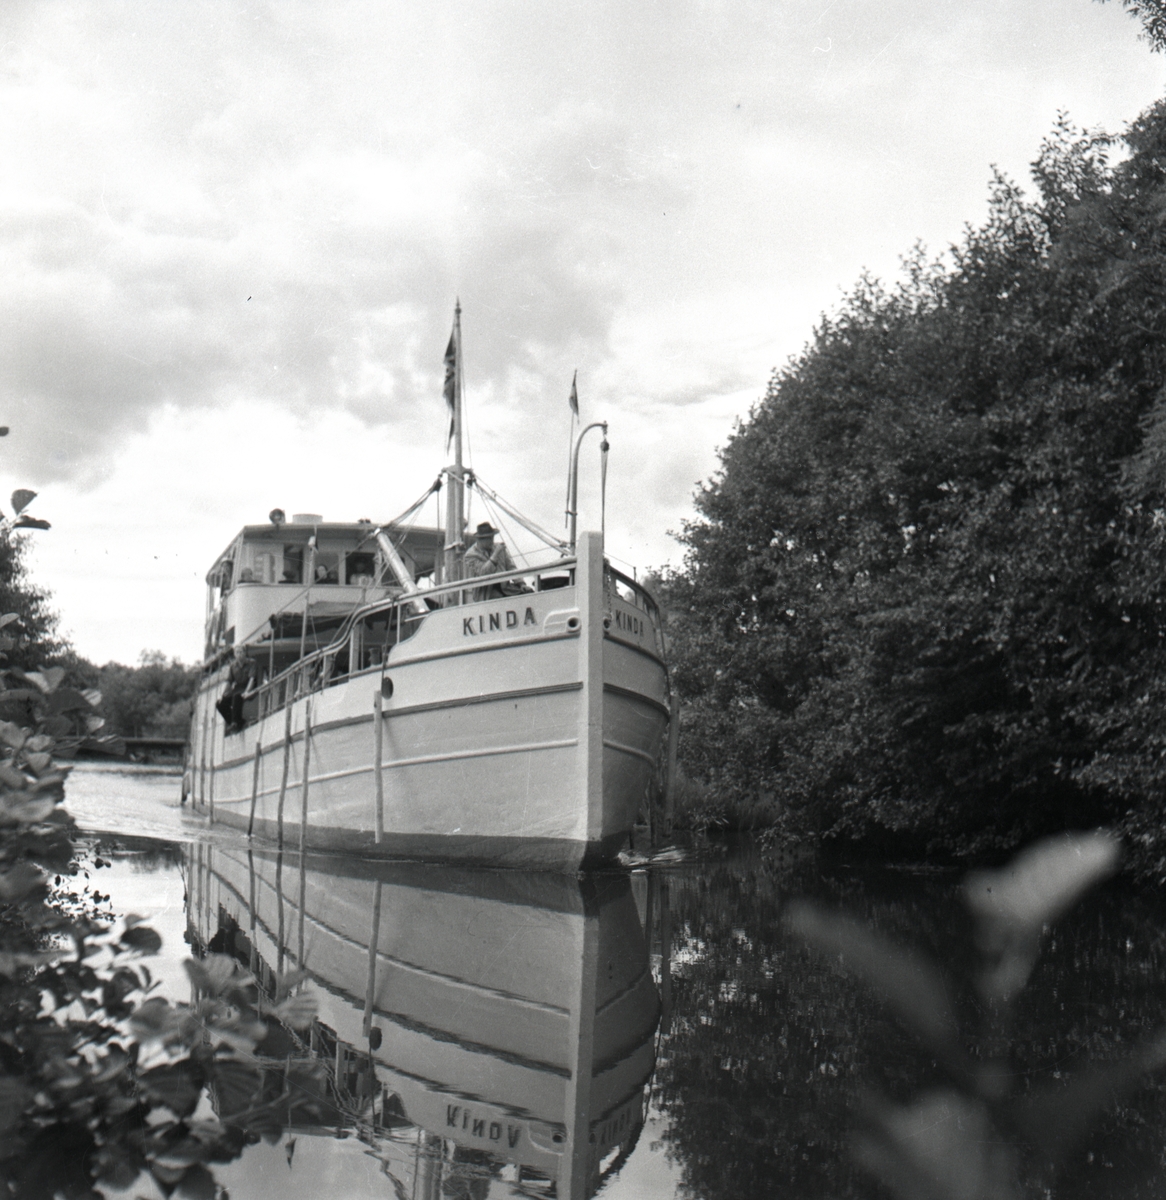 Båten Kinda flyter fram i Kinda kanal mot slussning. Hamra sluss. Kinda kanal öppnades som farled 1871 och certifierades året därpå.



Extern upplysning: Kinda i Hovetorp före 1957 då hon slutade trafikera kanalen.